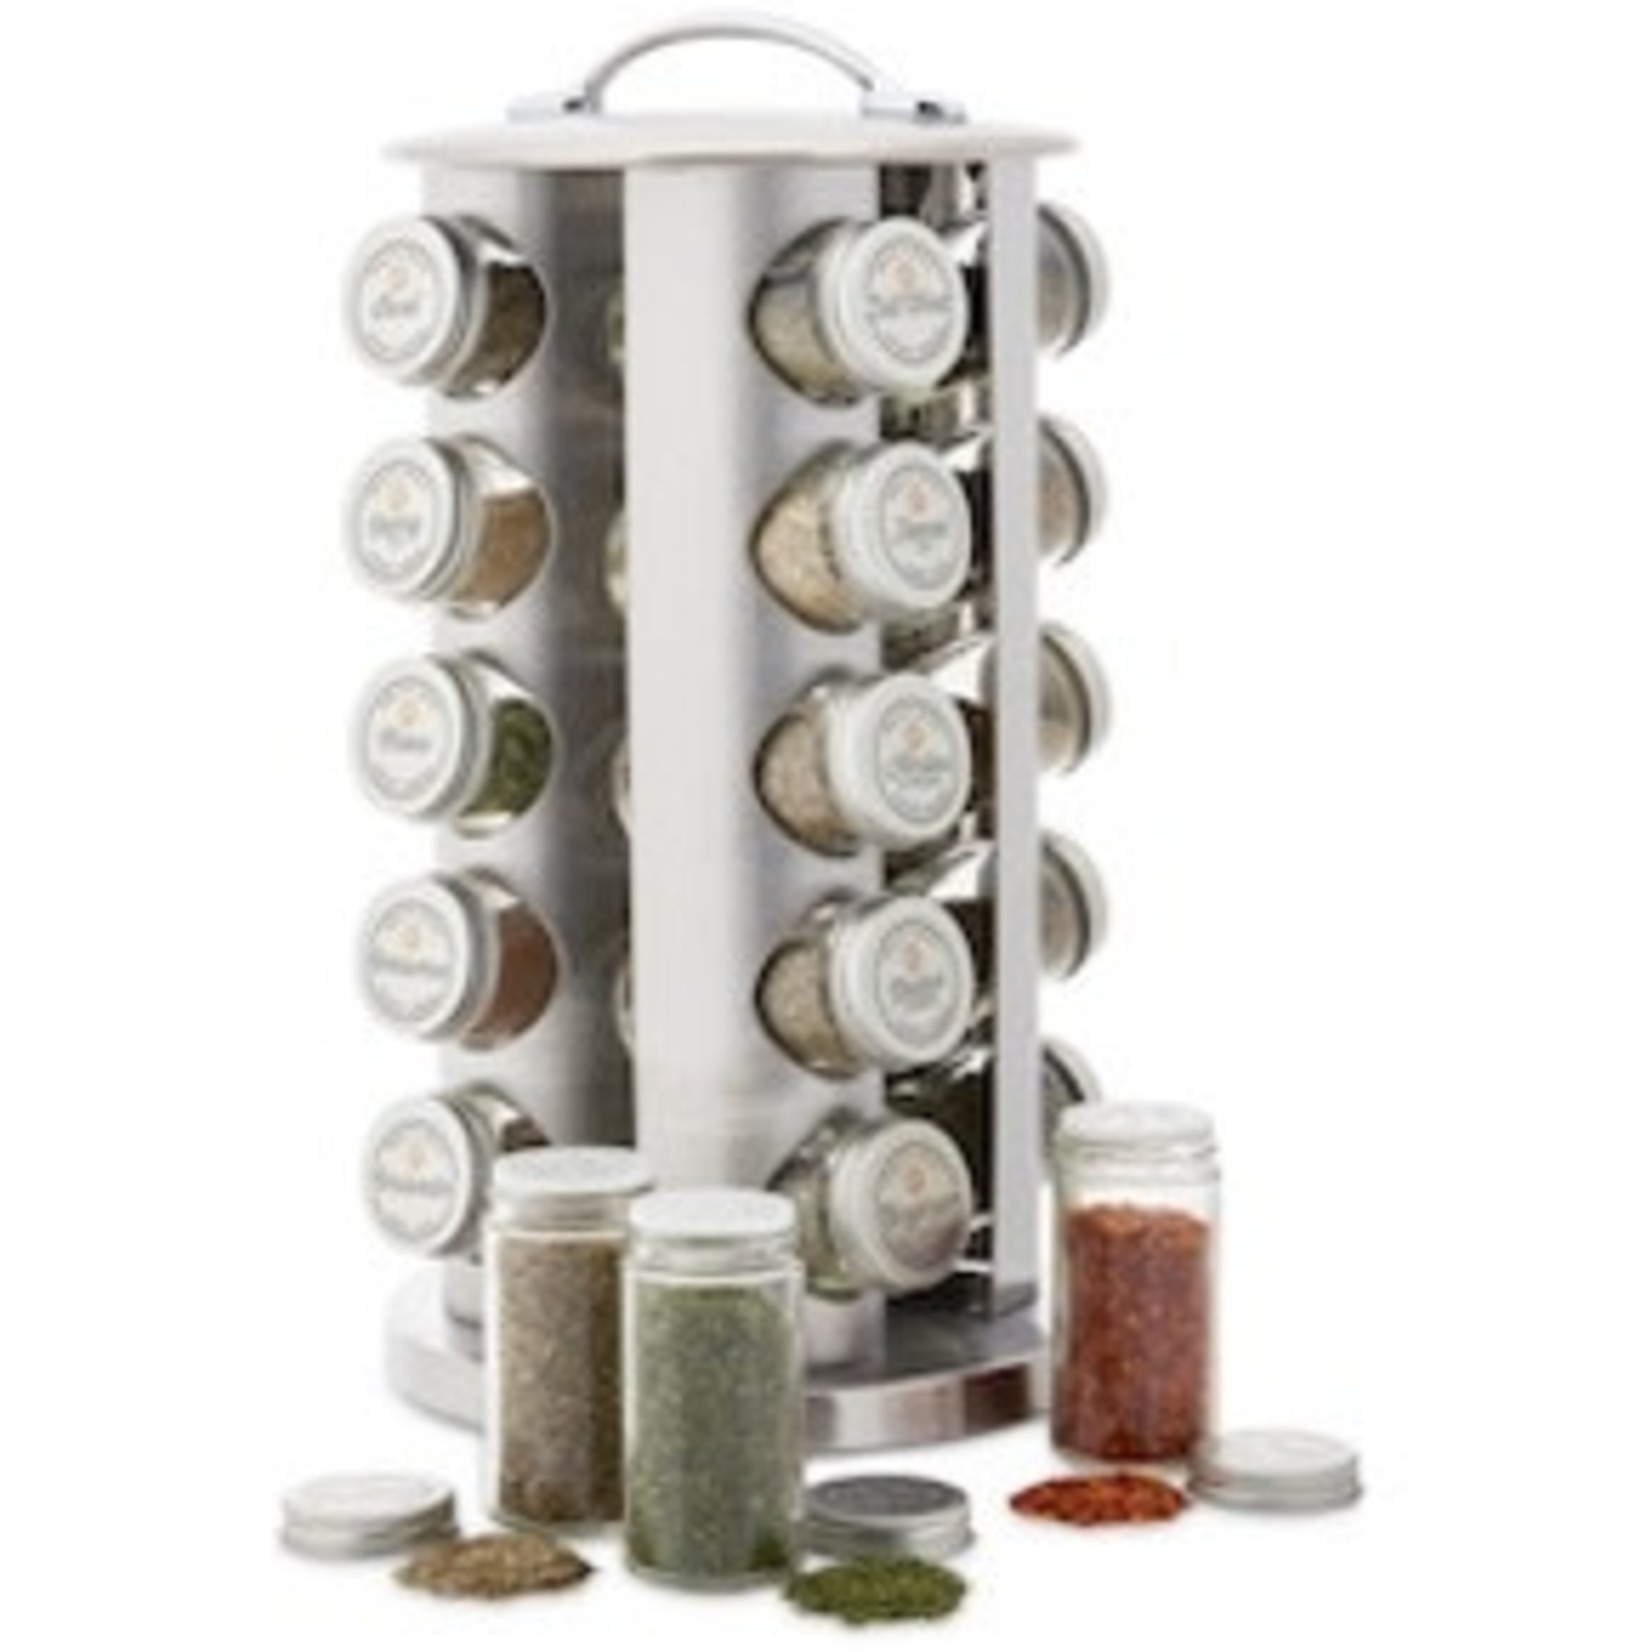 ALLRECIPES ALL RECIPES Revolving Spice rack - 20 Jar